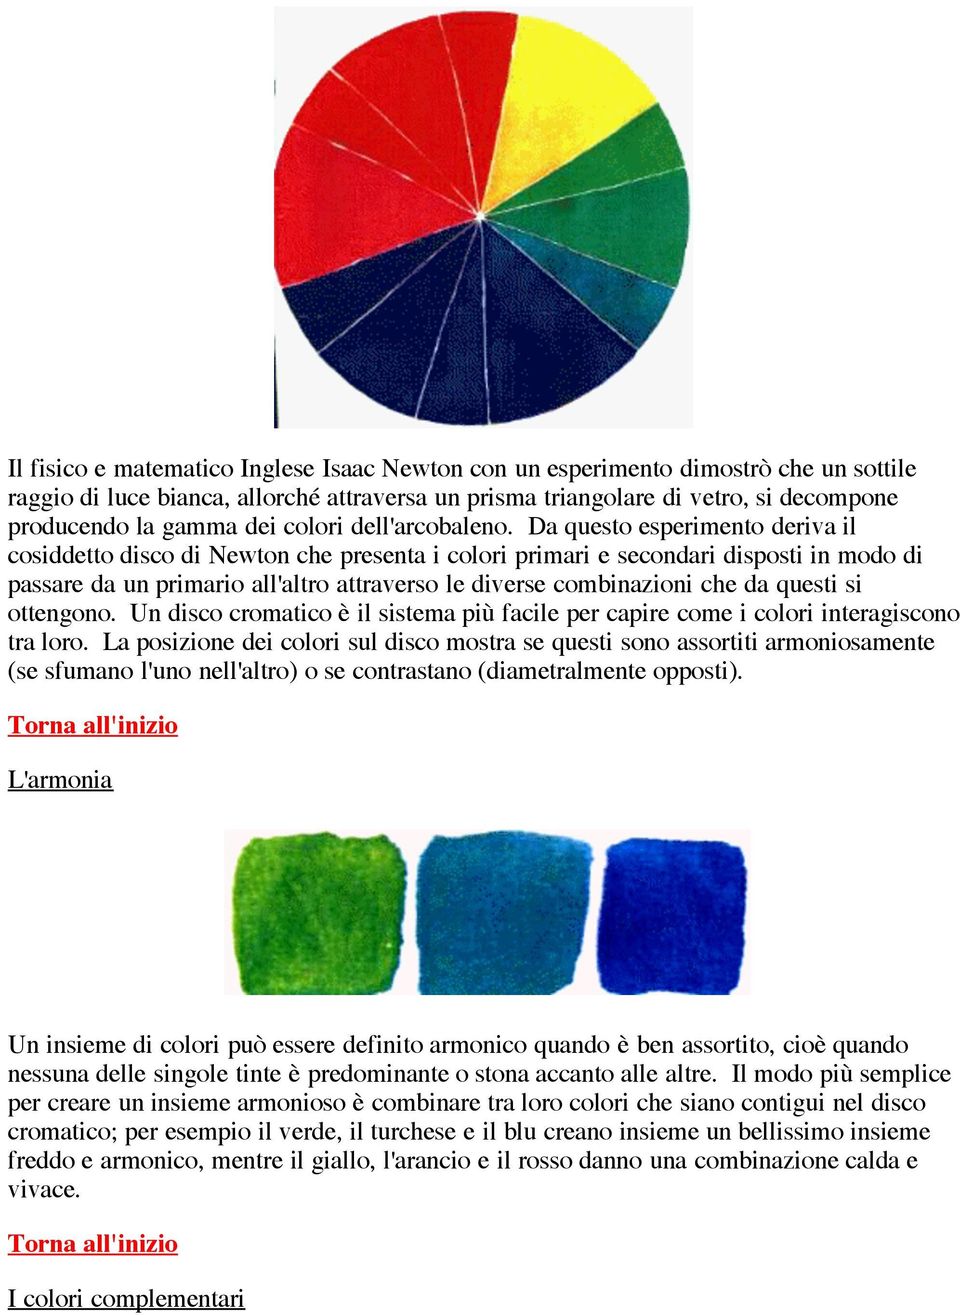 Da questo esperimento deriva il cosiddetto disco di Newton che presenta i colori primari e secondari disposti in modo di passare da un primario all'altro attraverso le diverse combinazioni che da